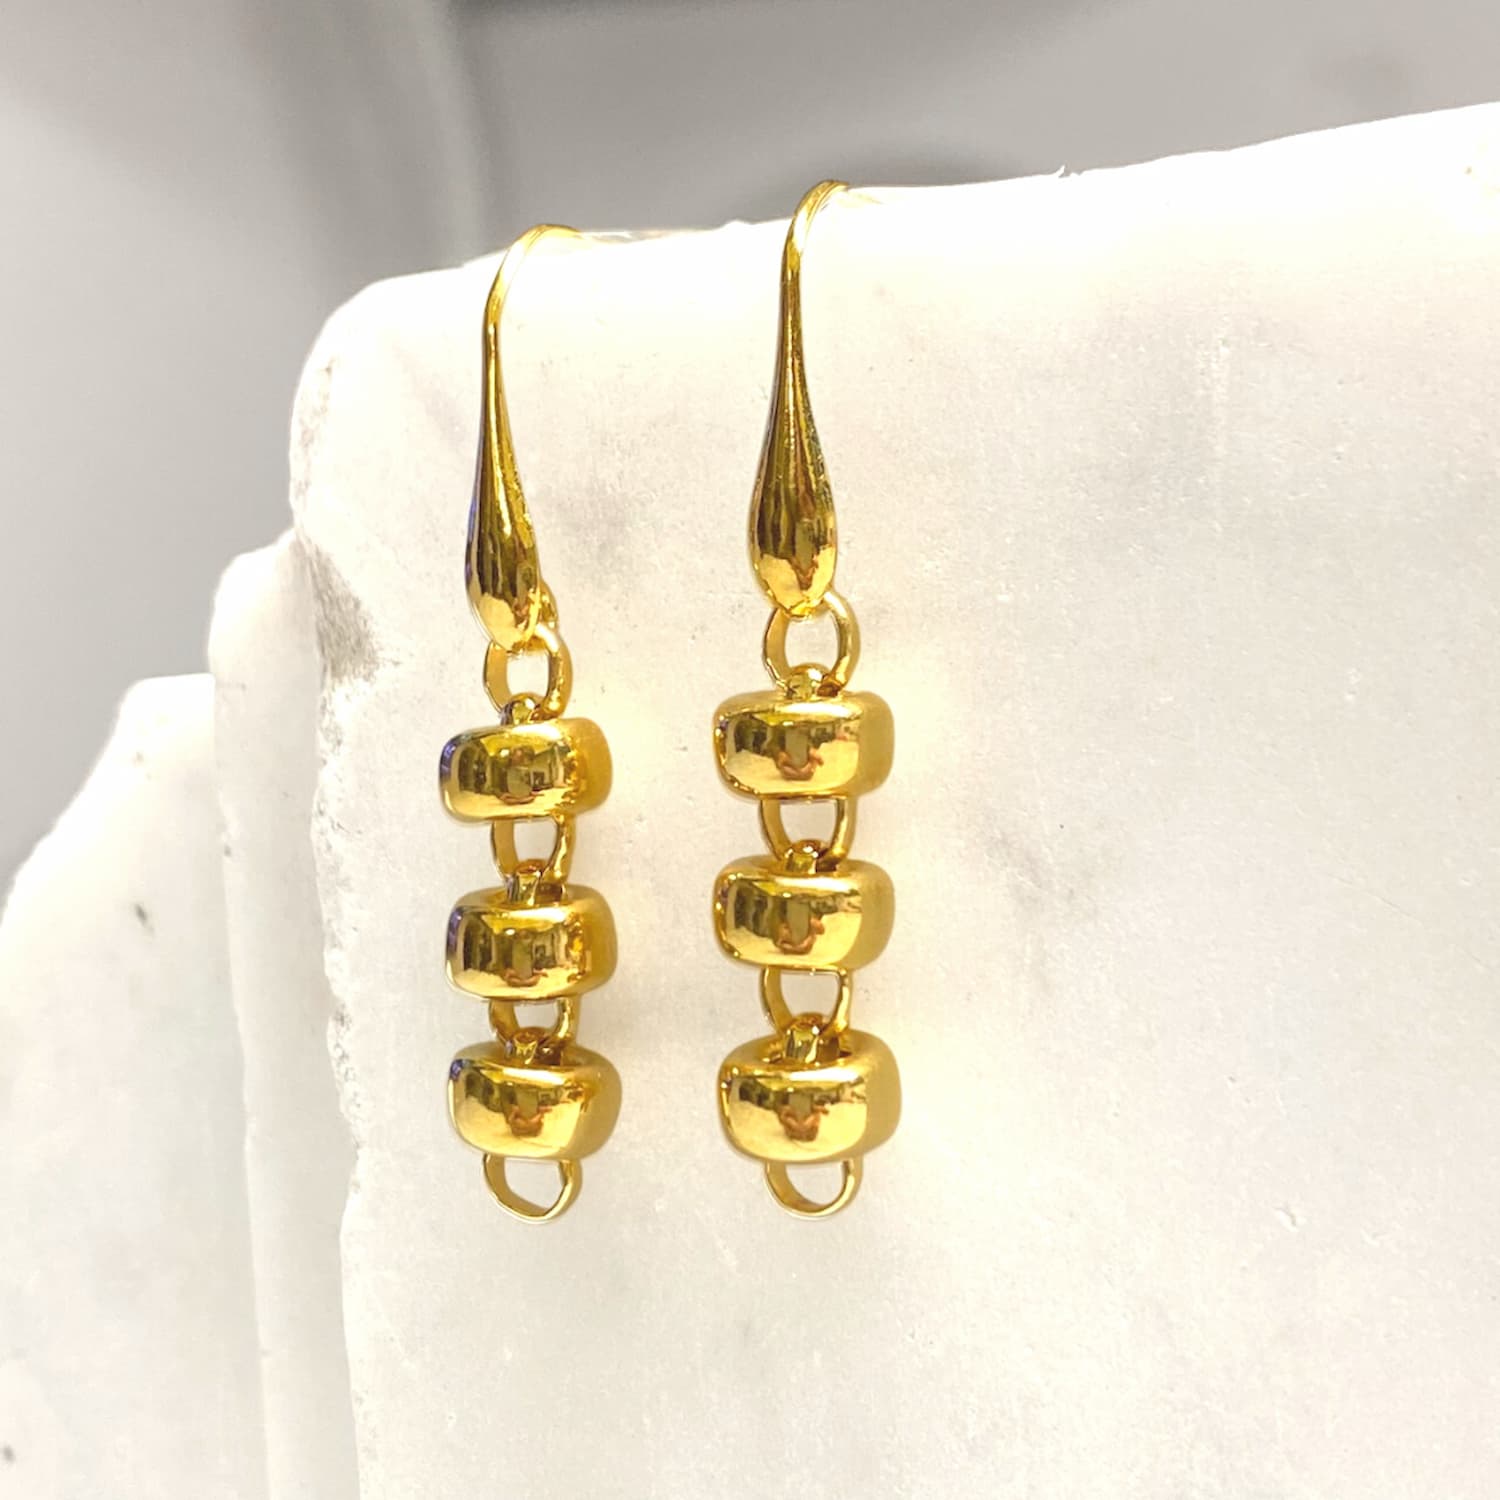 Ciambelle 10mm Earrings in Gold, Short